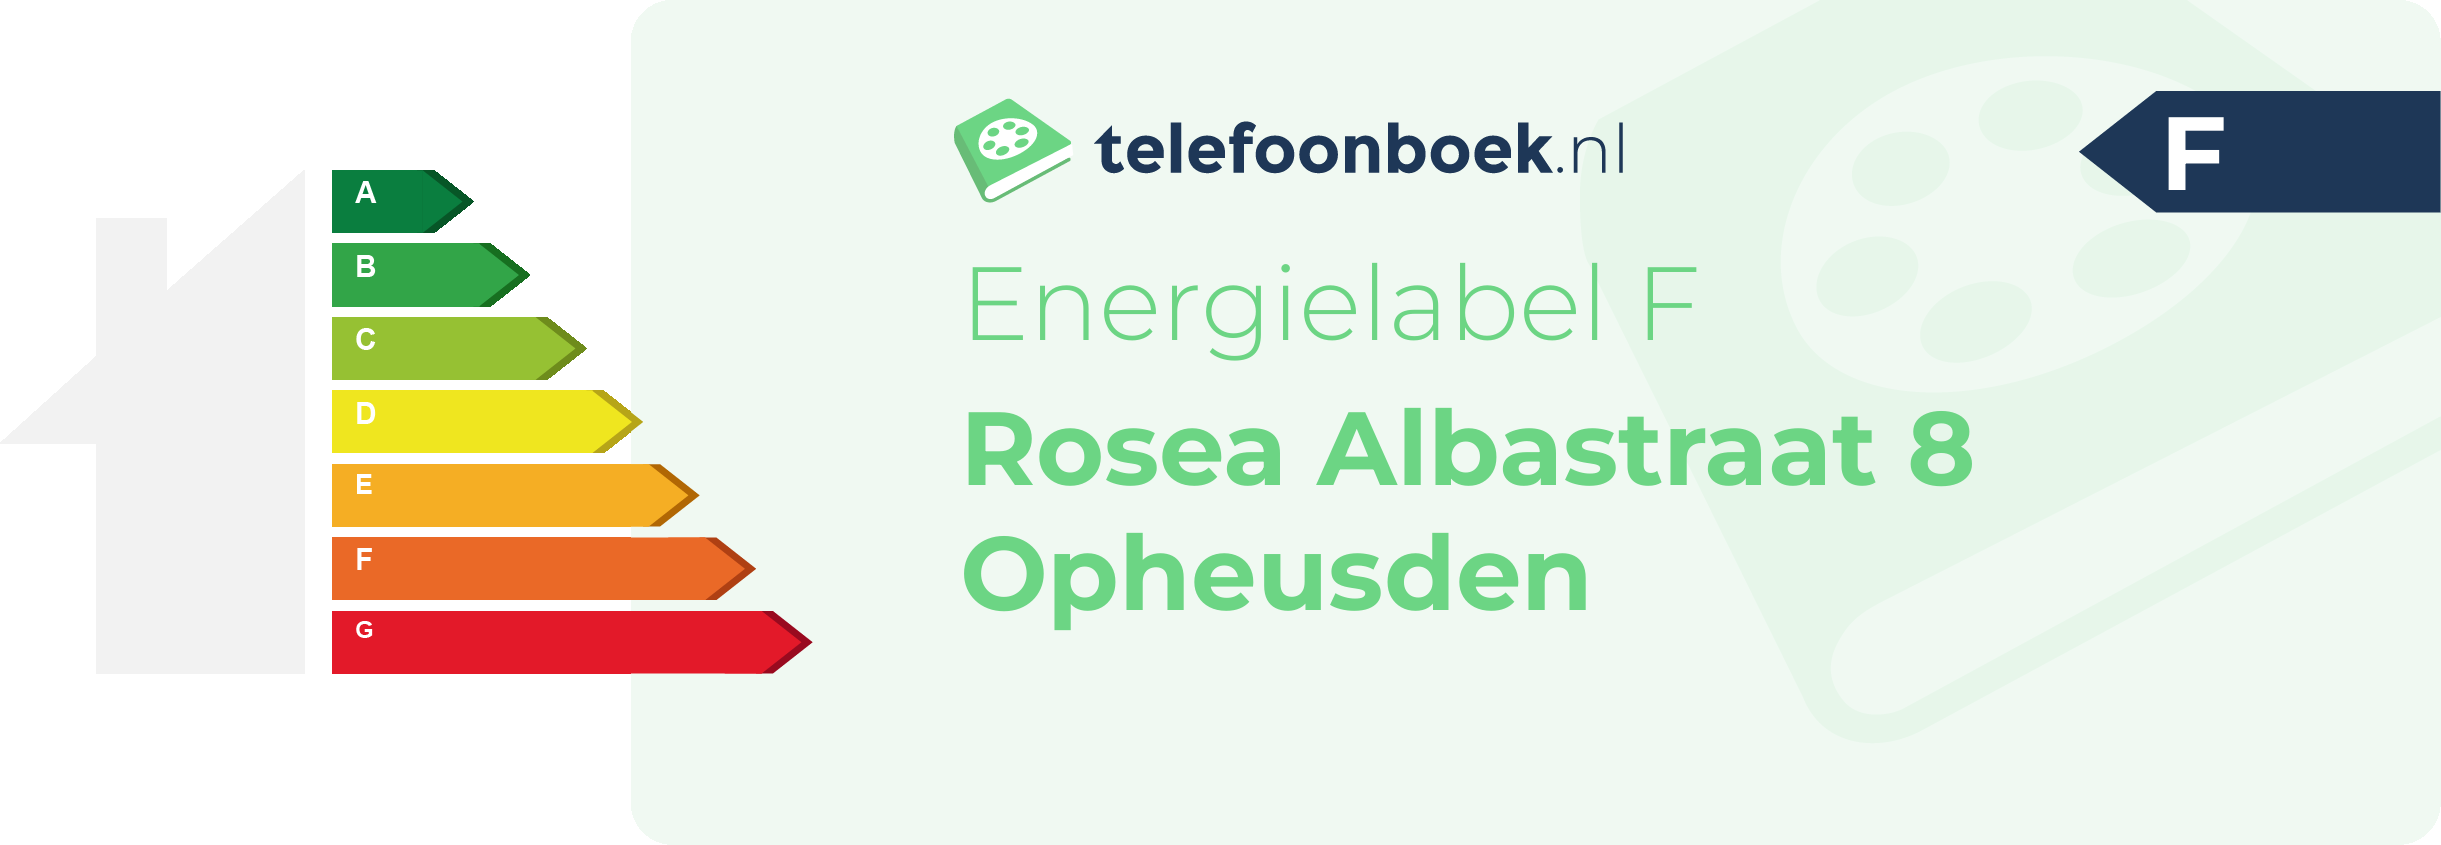 Energielabel Rosea Albastraat 8 Opheusden